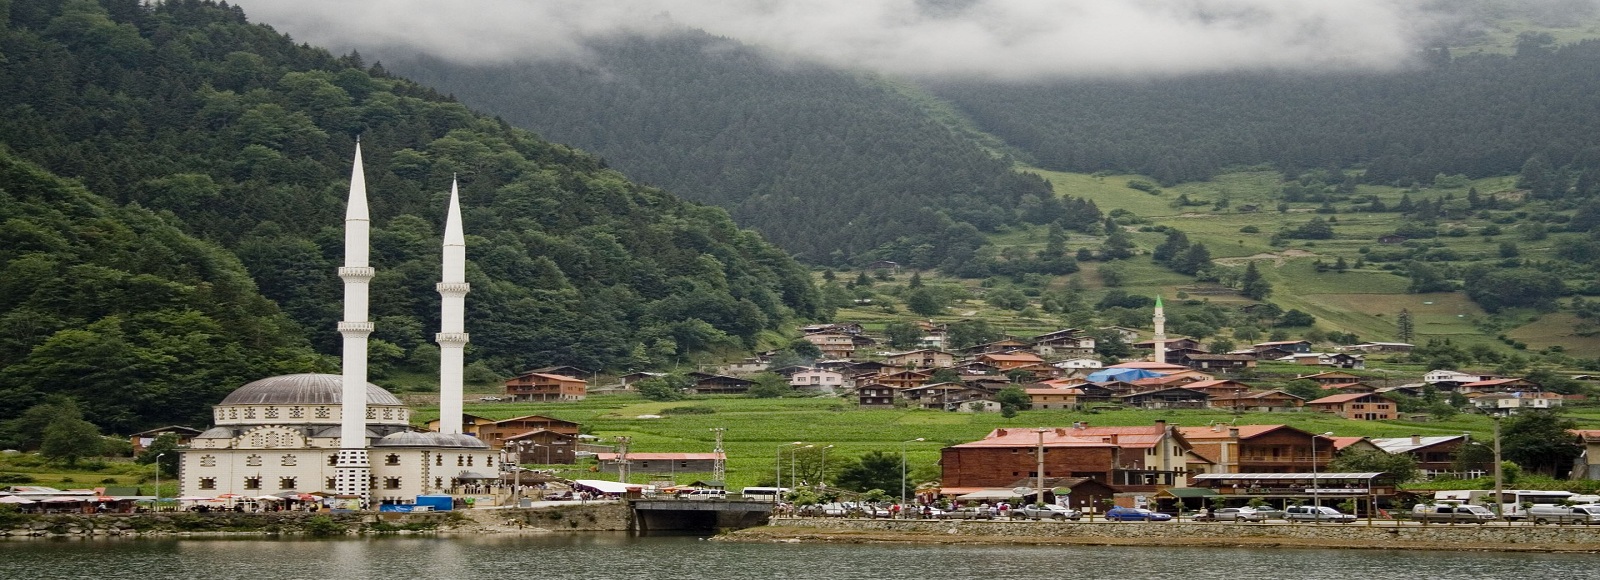 Ofertas de Traslados en Trabzon. Traslados económicos en Trabzon 